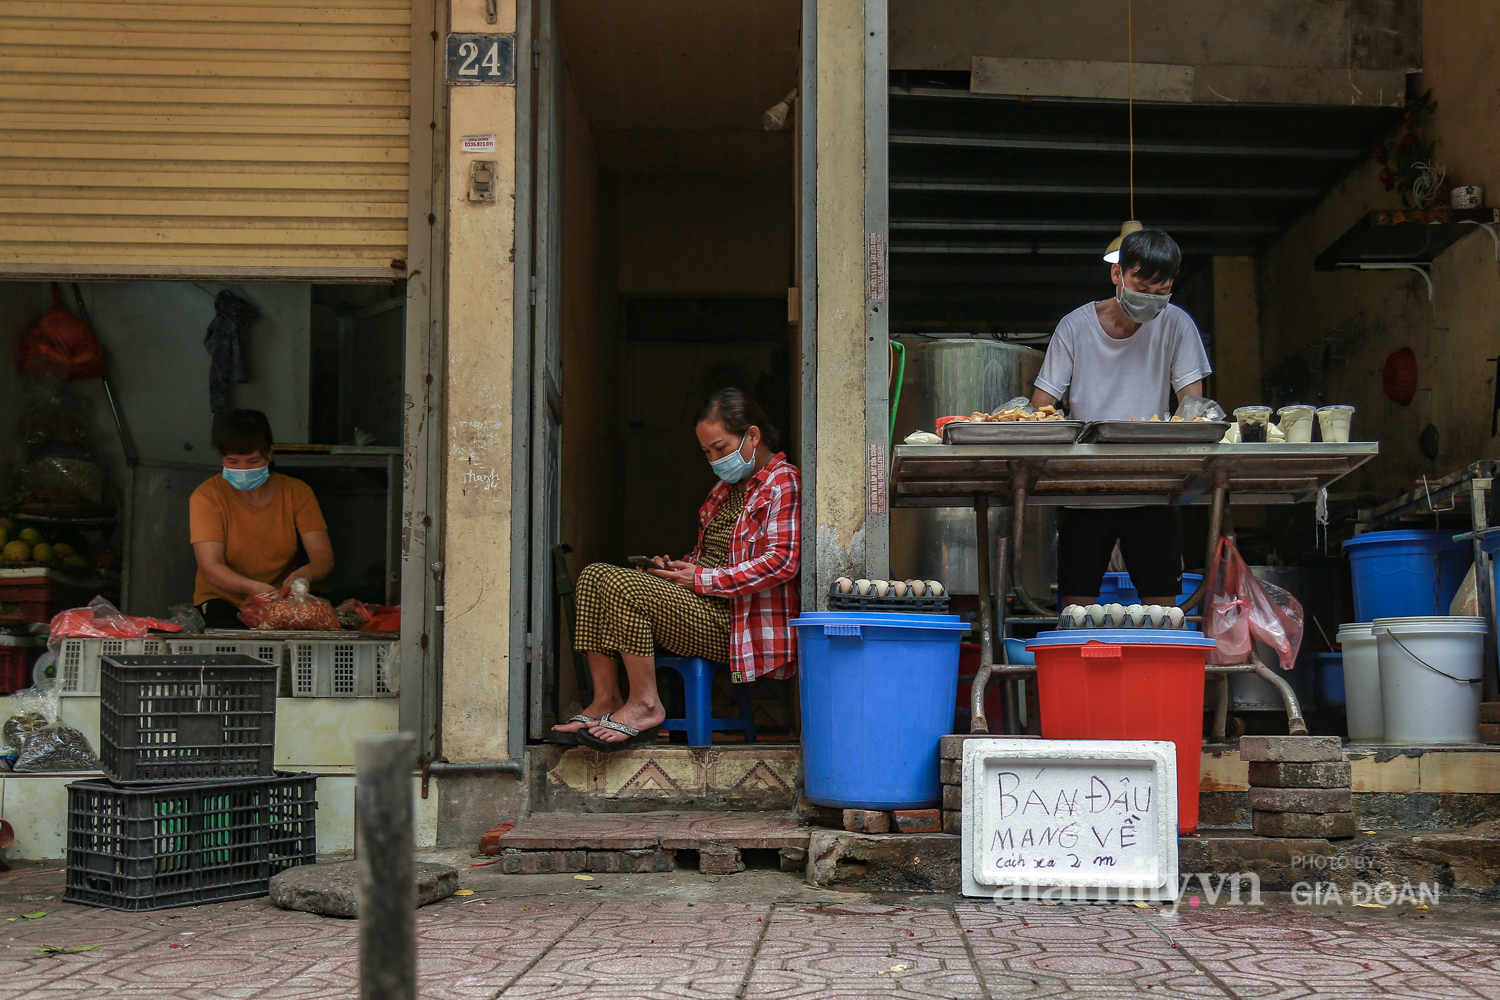 Chung tay phòng chống dịch COVID-19, một khu chợ ở Hà Nội người dân bỏ tiền vào xô rồi lấy đồ ở chậu - Ảnh 6.